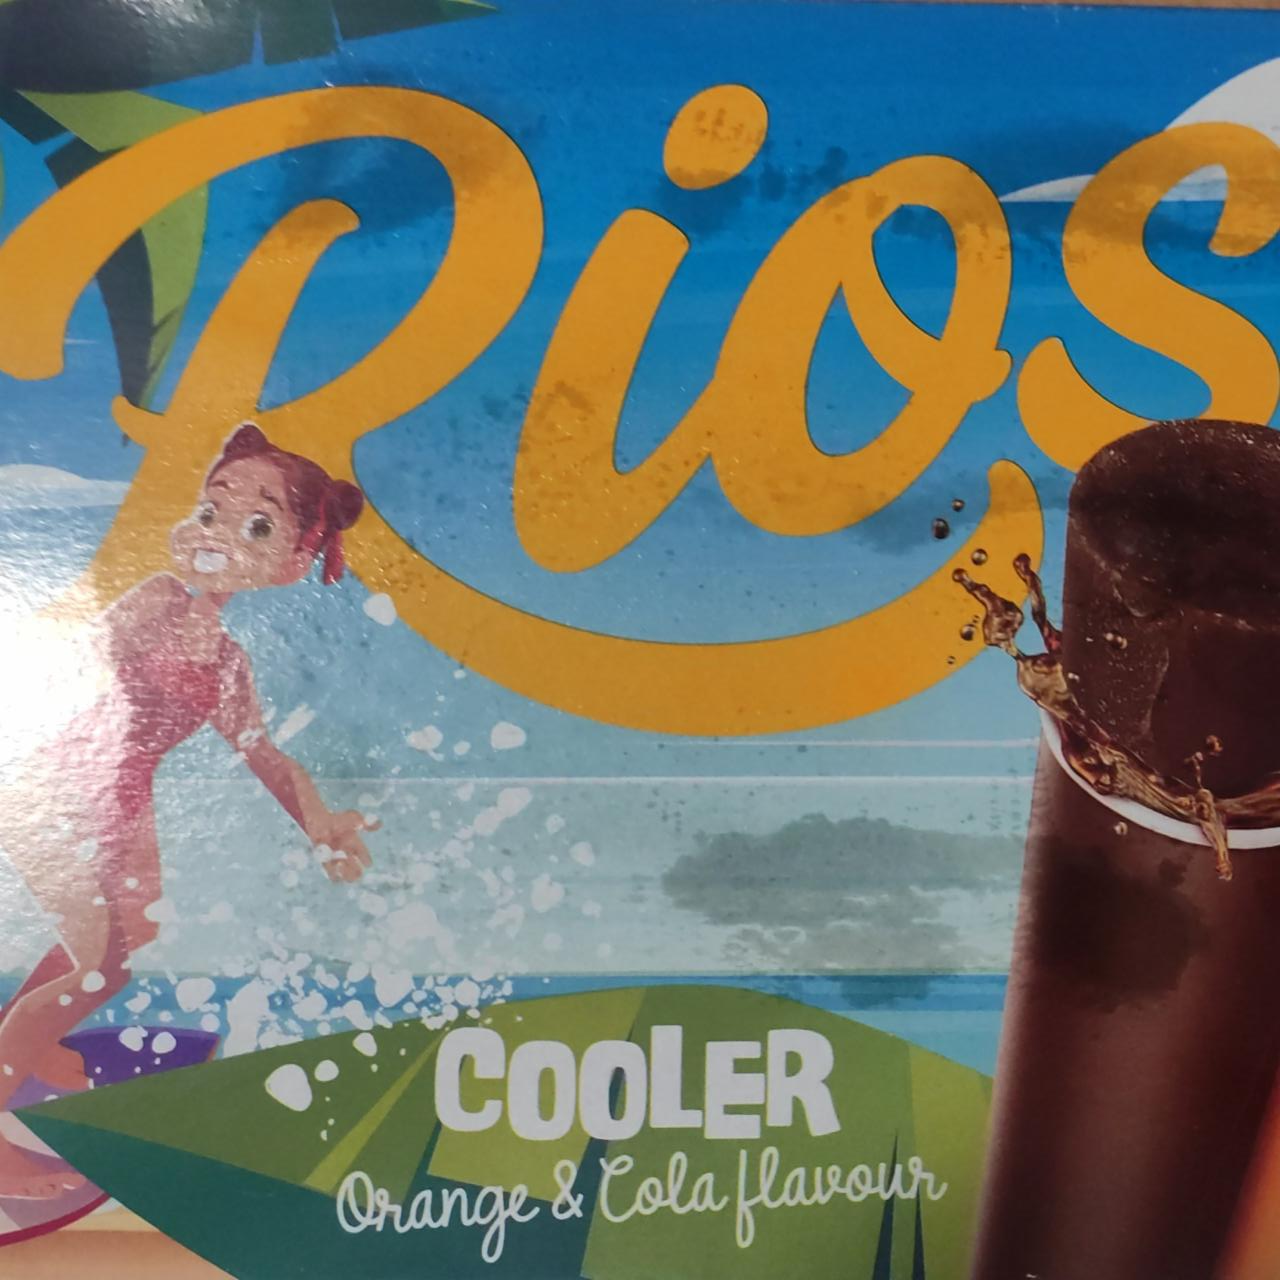 Fotografie - Cooler Orange & Cola Flavour Rios